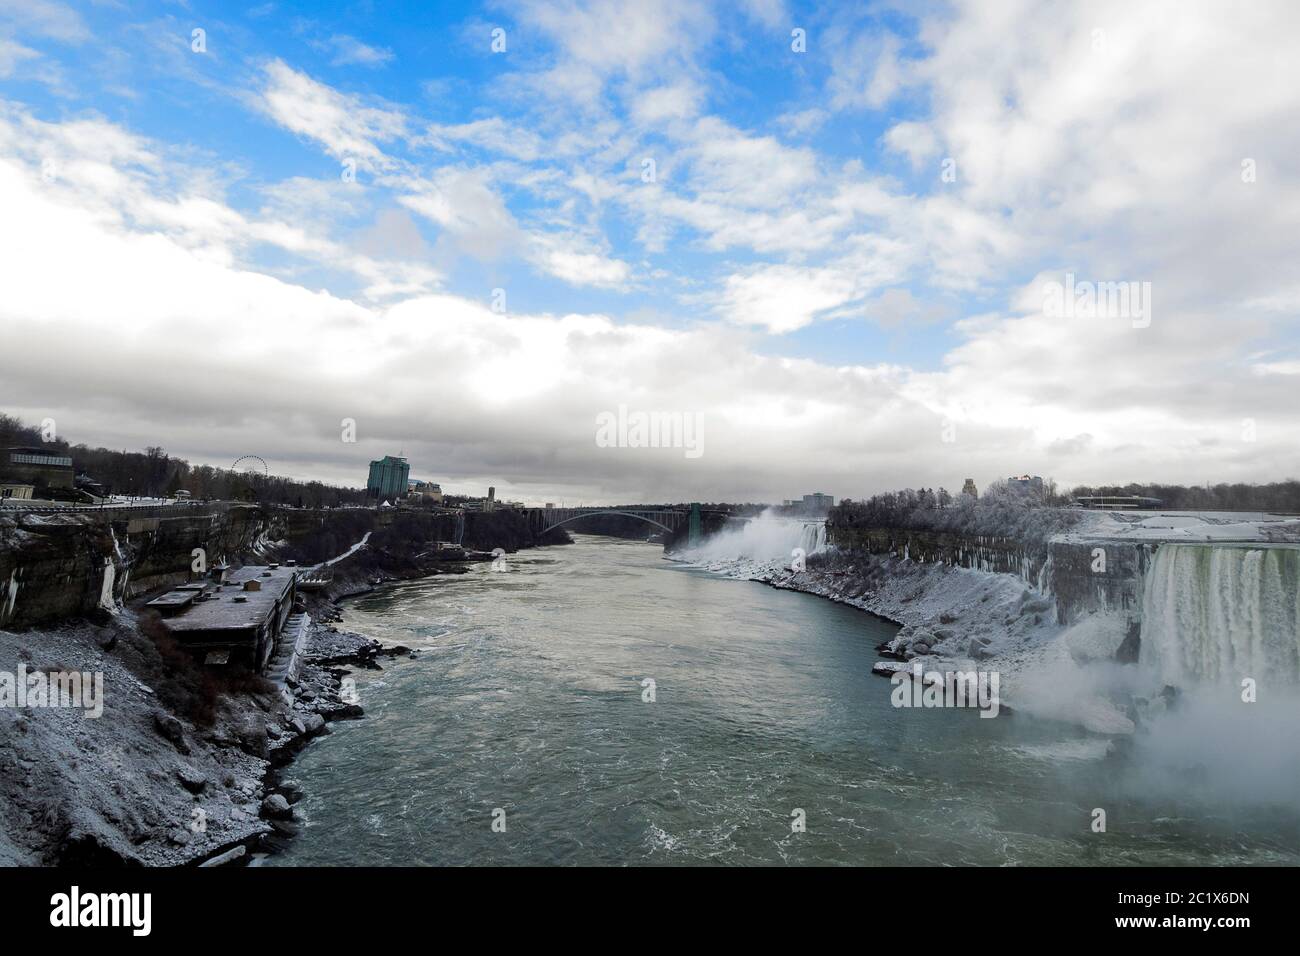 América del Norte - Canadá y Estados Unidos , Horseshoe Falls y American Falls en las Cataratas del Niágara Foto de stock